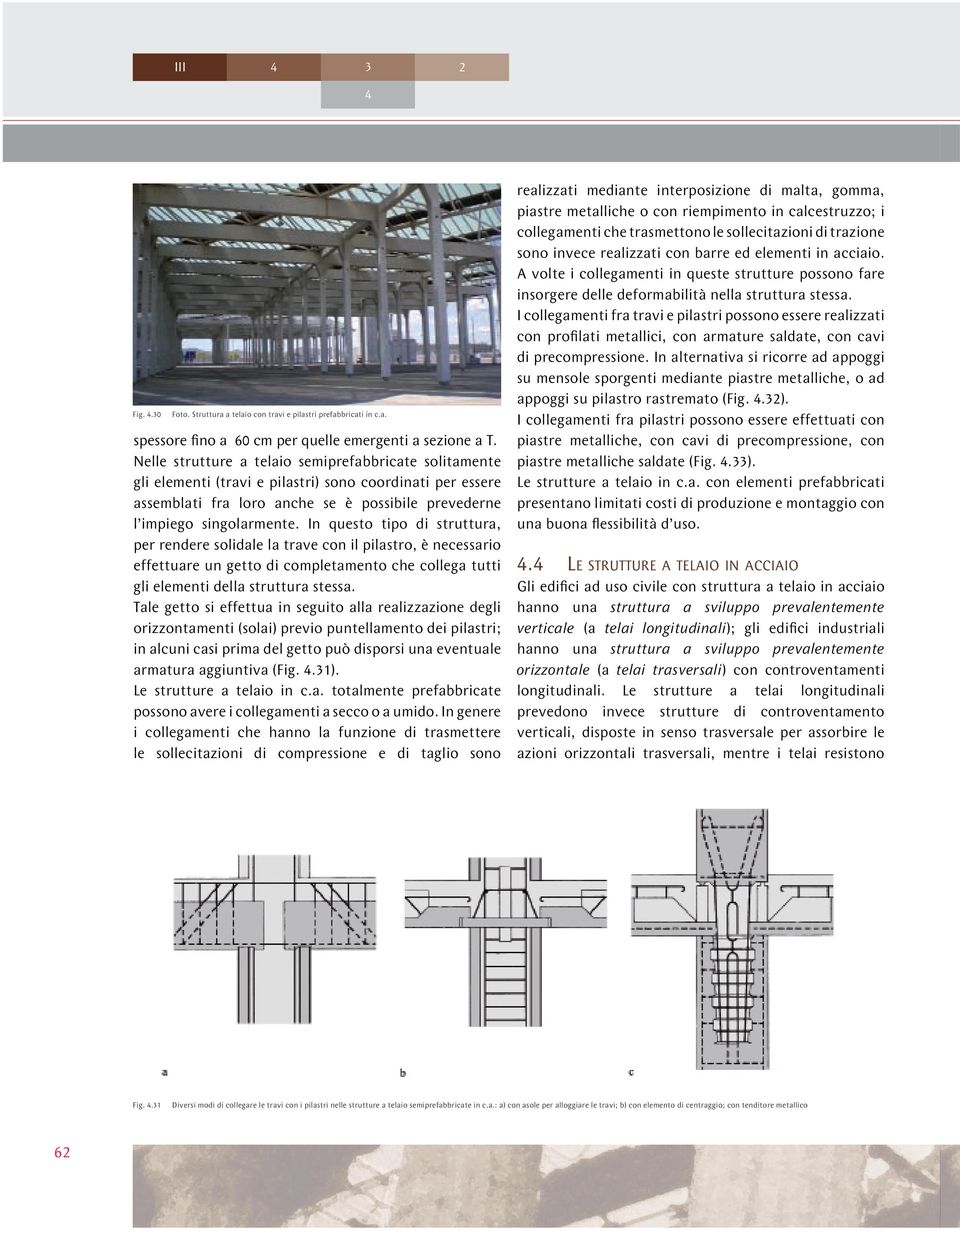 In questo tipo di struttura, per rendere solidale la trave con il pilastro, è necessario effettuare un getto di completamento che collega tutti gli elementi della struttura stessa.